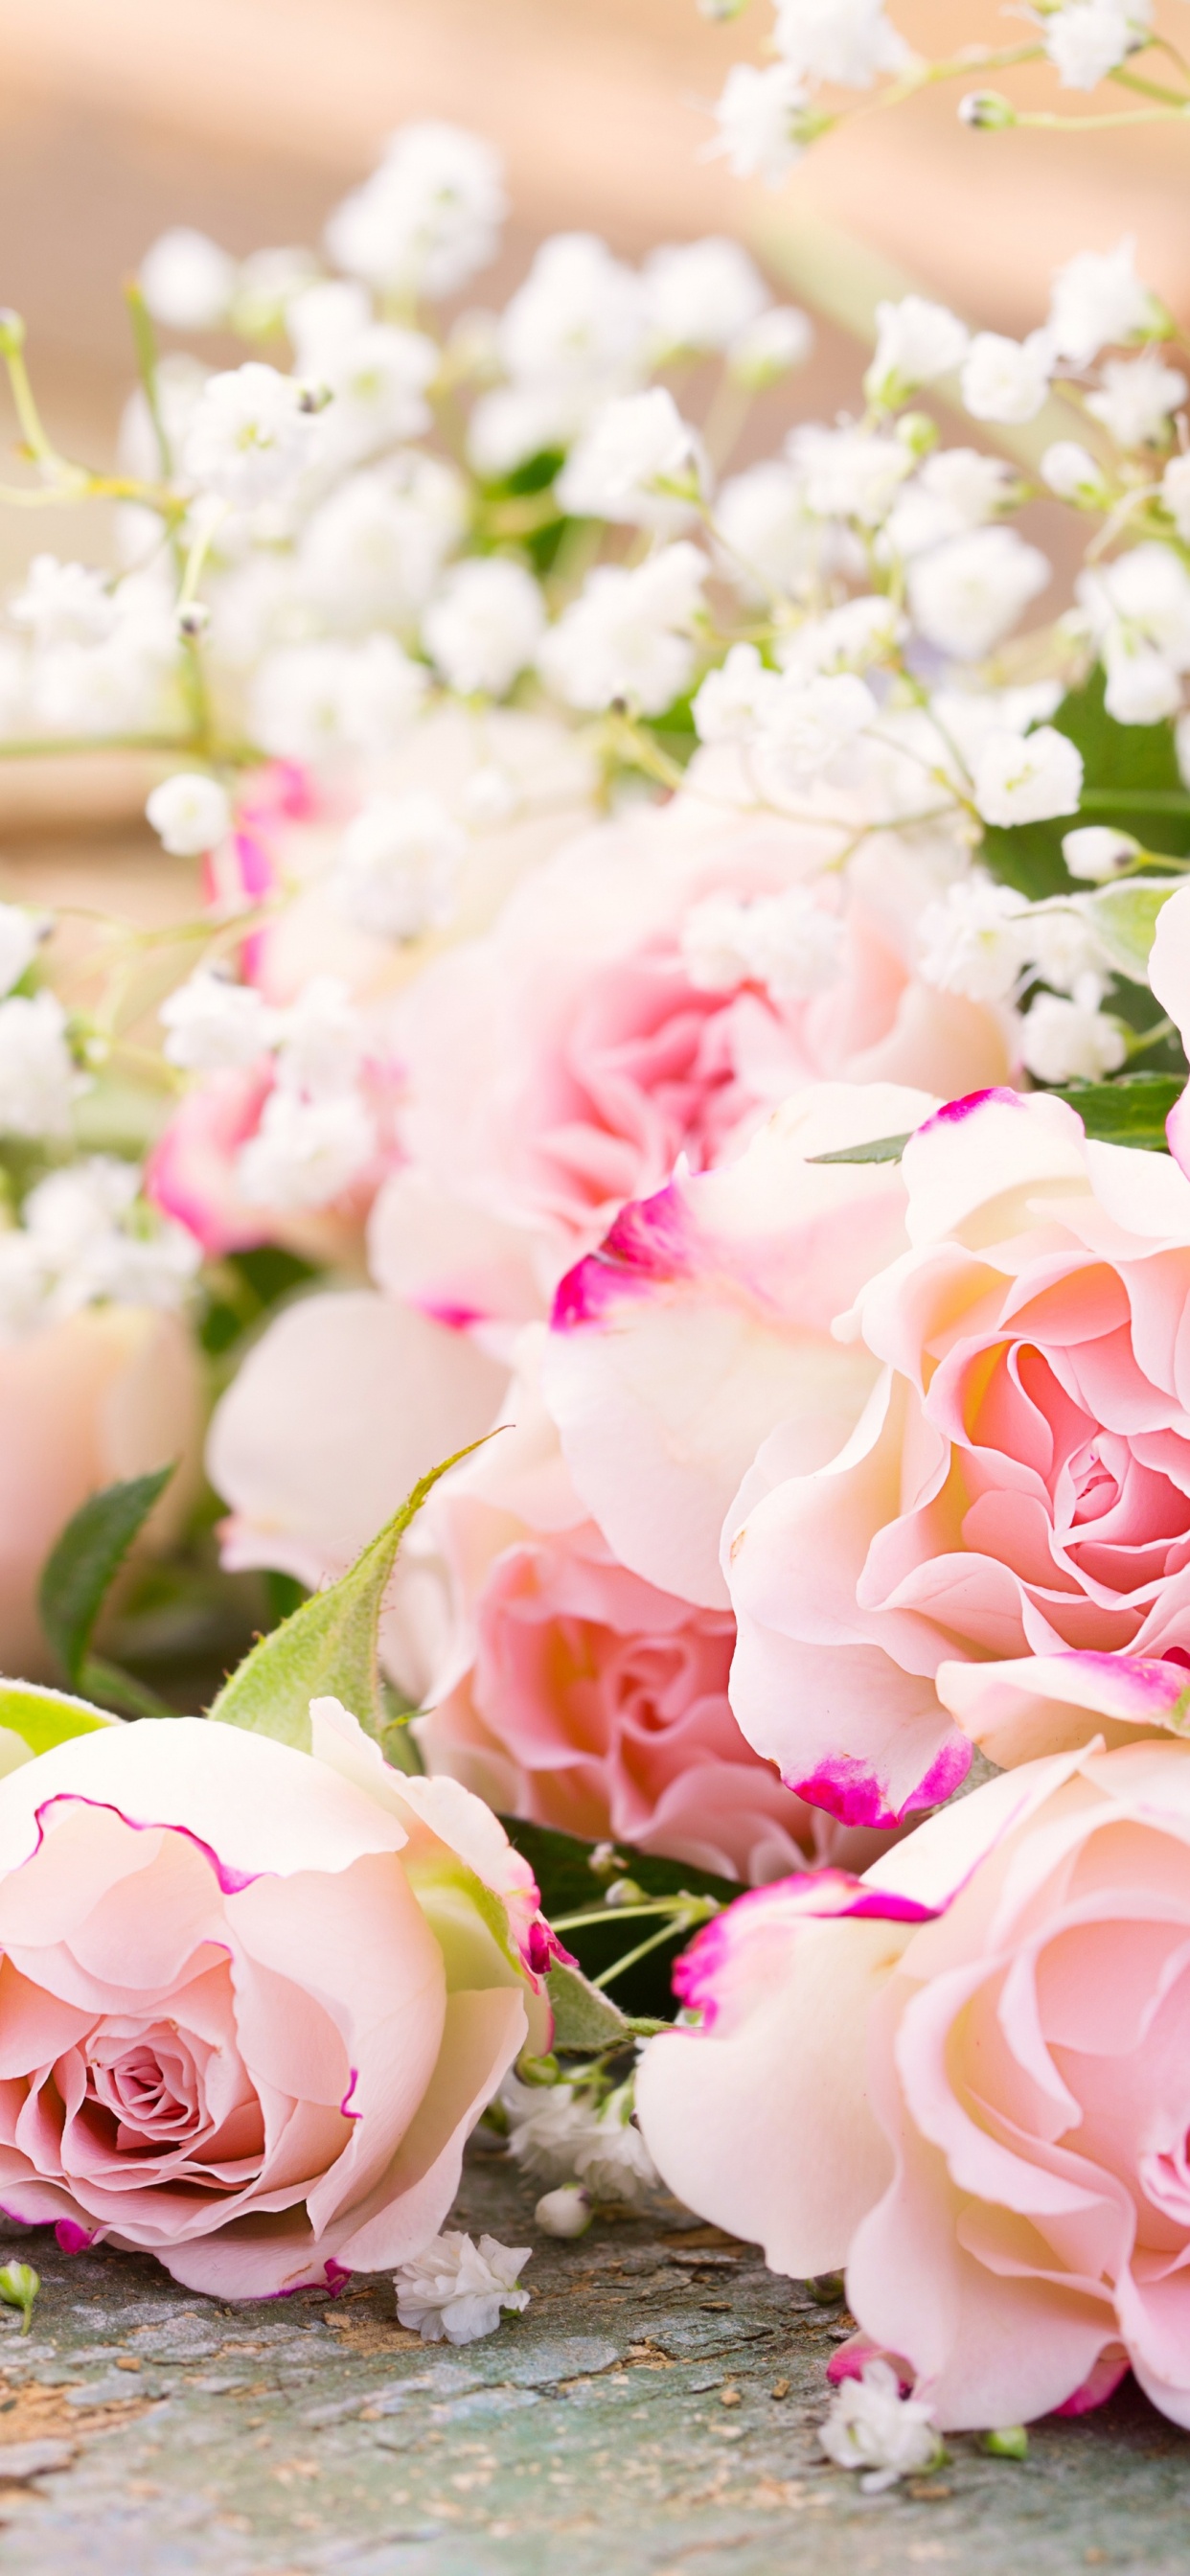 玫瑰花园, 粉红色, 花安排, 花卉设计, 切花 壁纸 1242x2688 允许